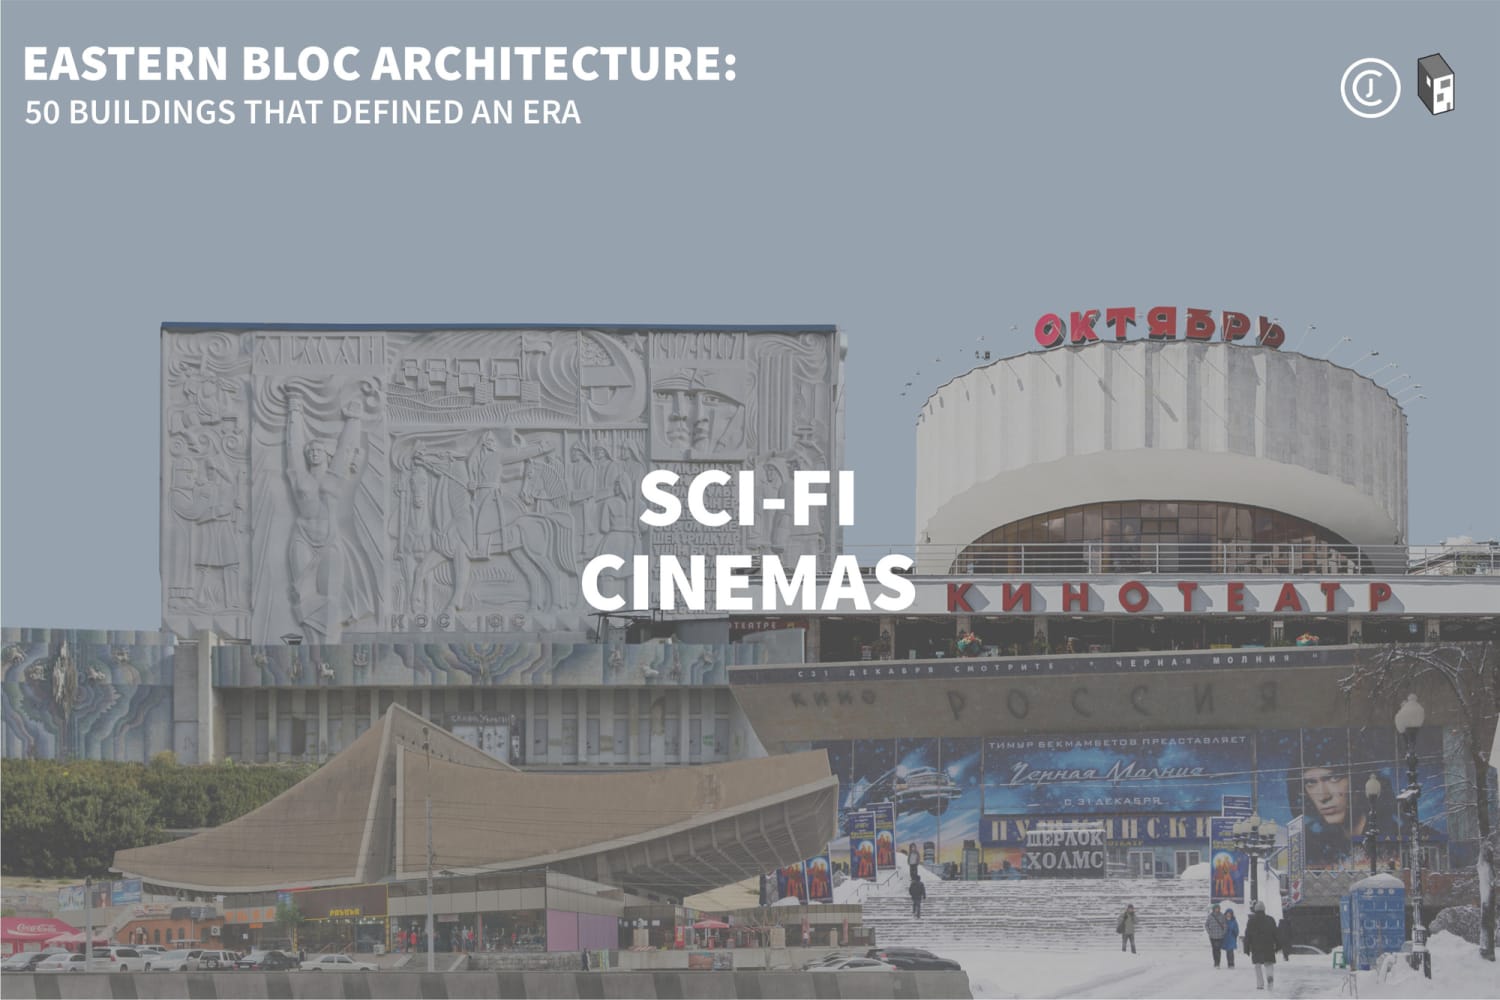 Eastern Bloc Architecture: Sci-fi Cinemas